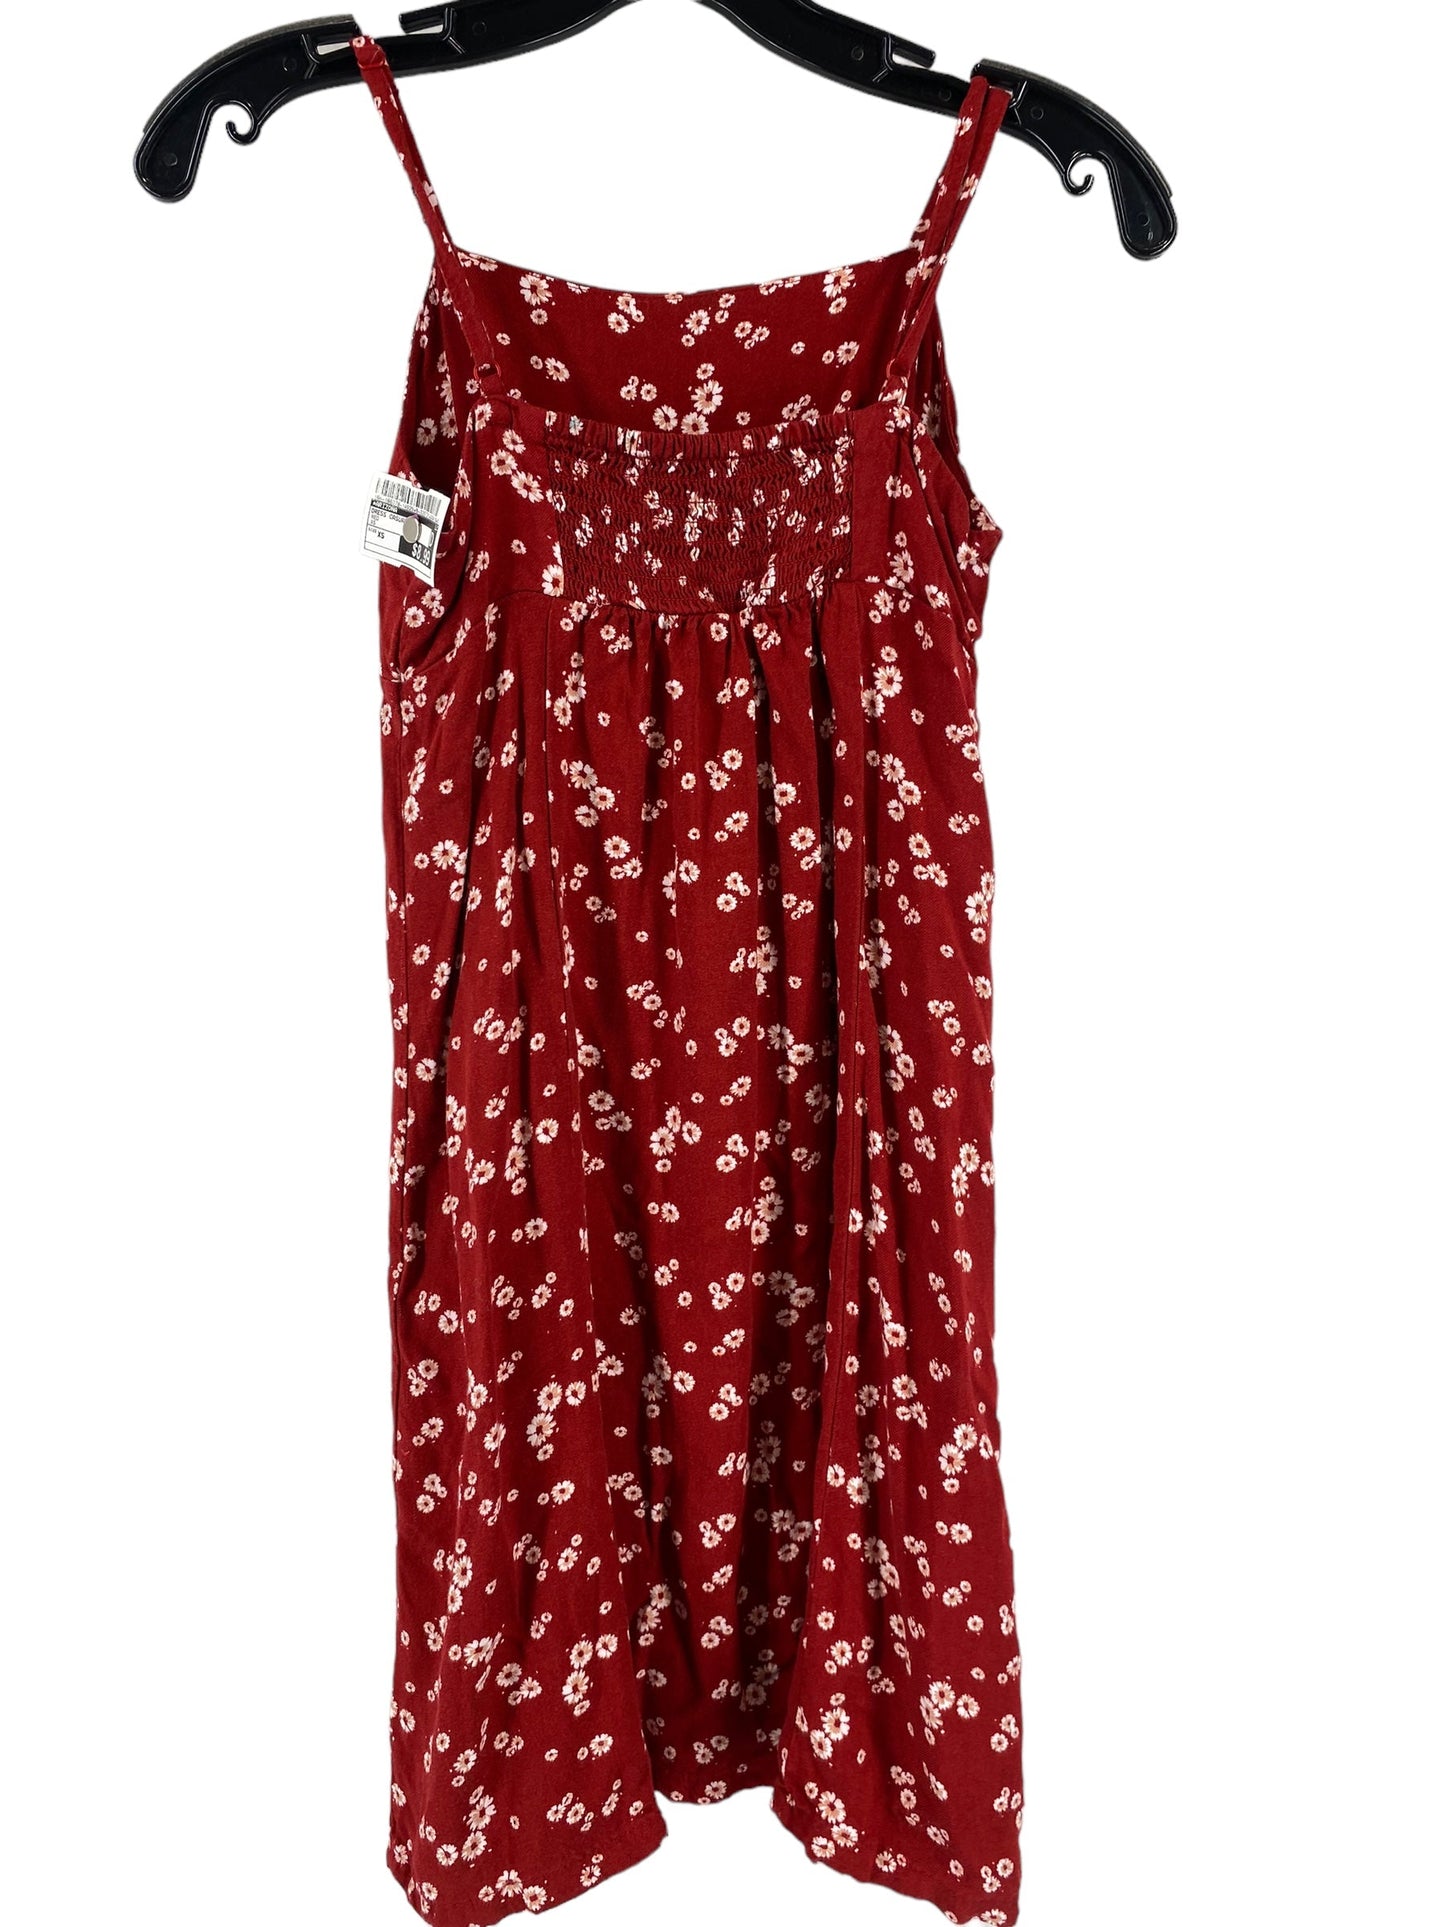 Dress Casual Short By Arizona  Size: Xs